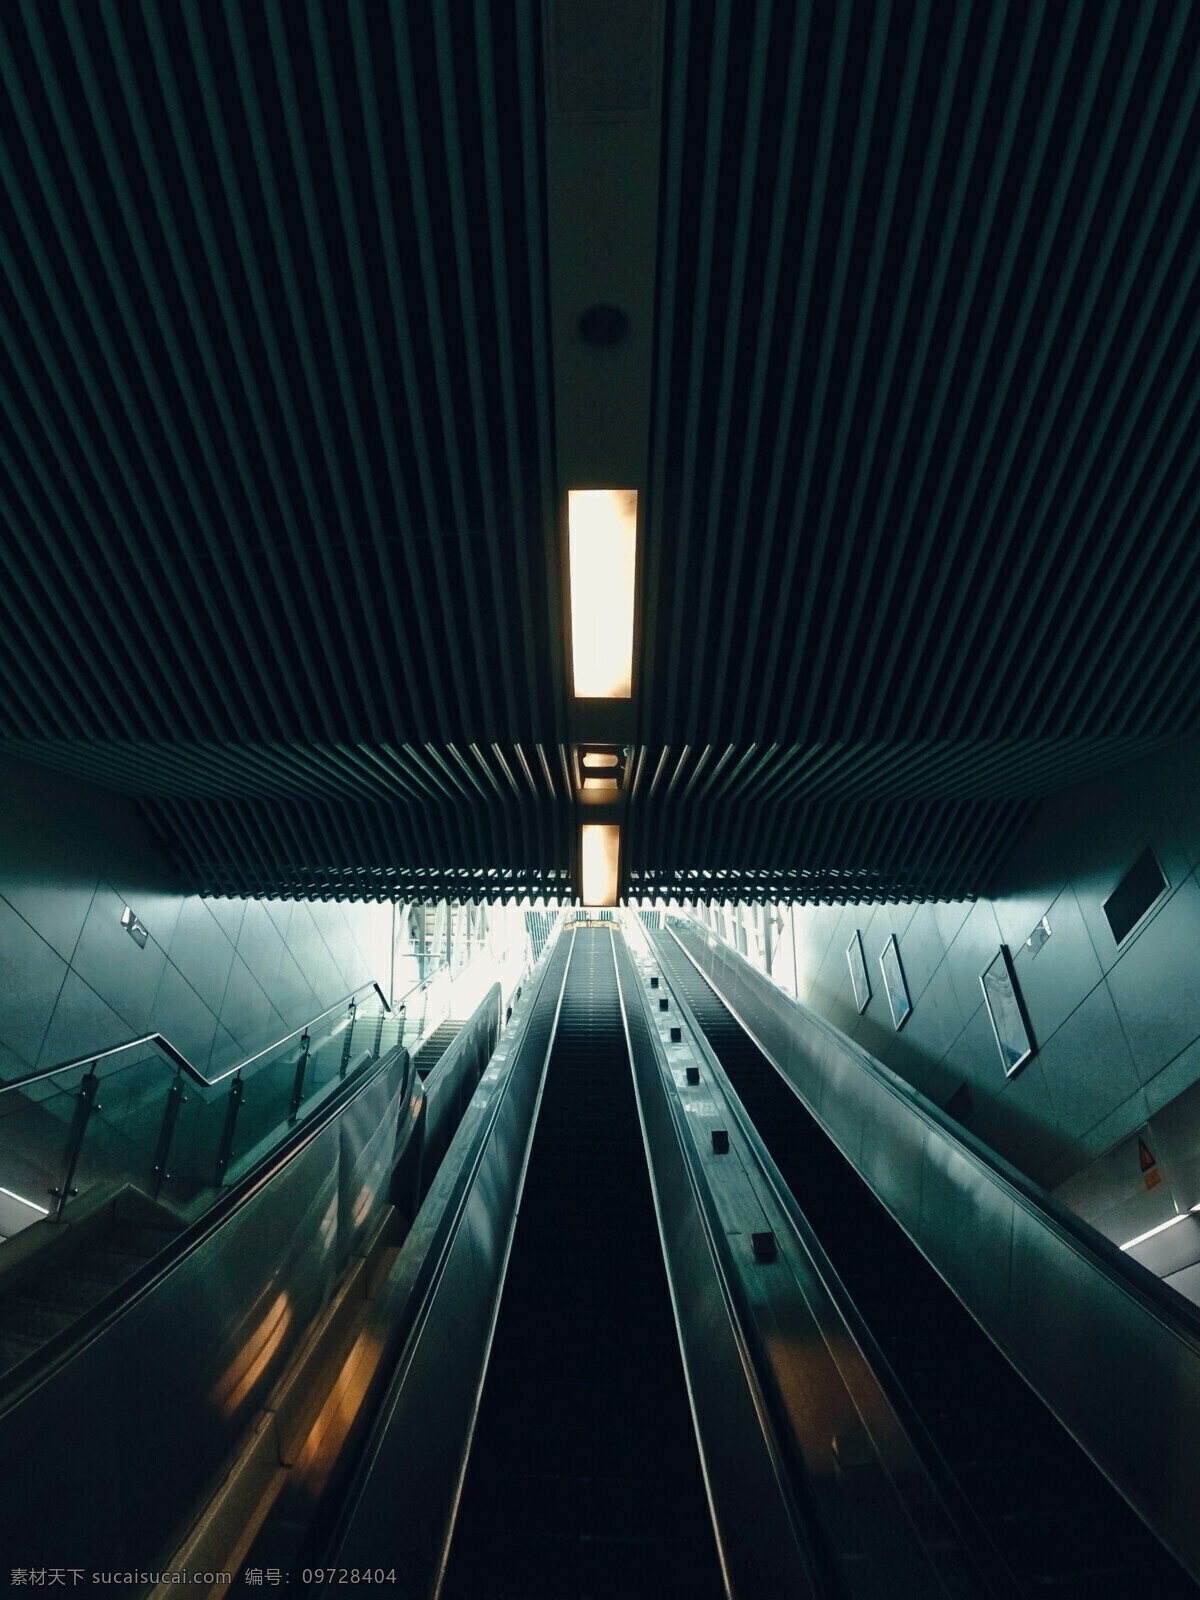 扶手电梯图片 地铁站 扶手电梯 暗金风格 高清 光亮 现代科技 交通工具